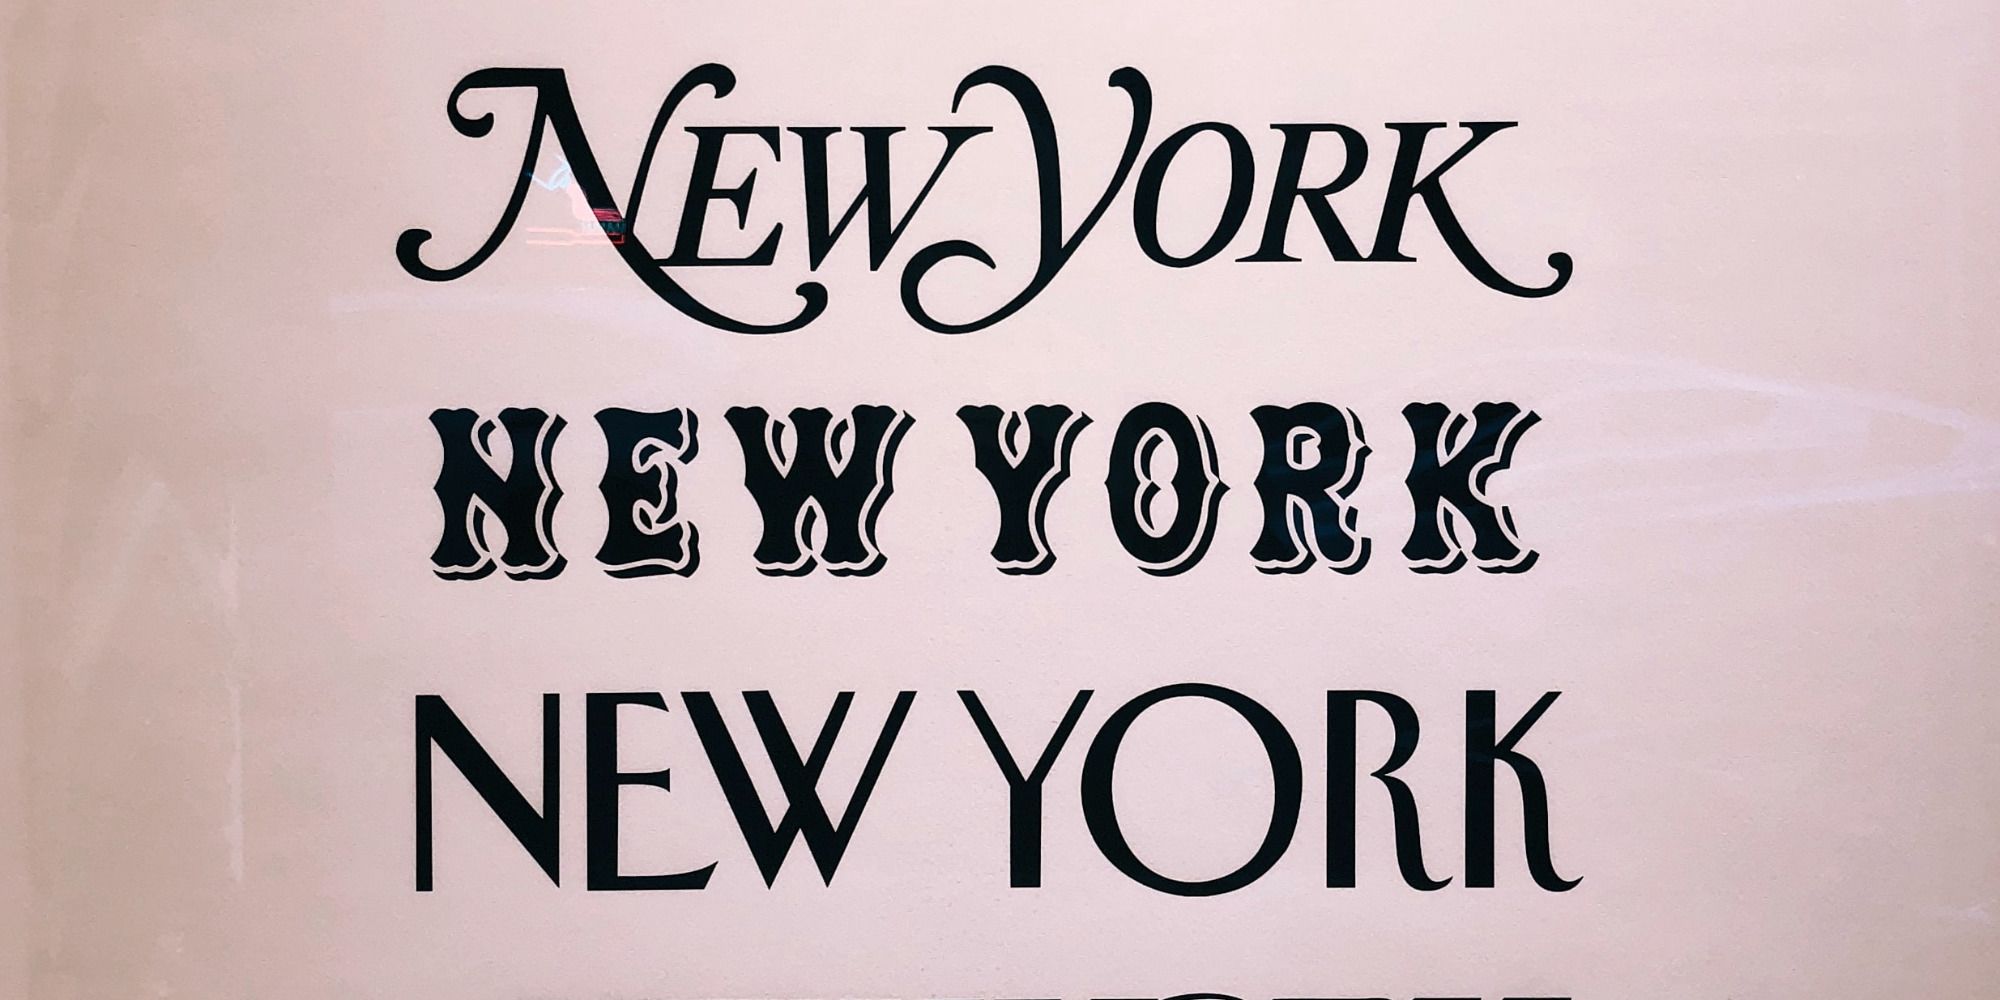 New York signage typefaces